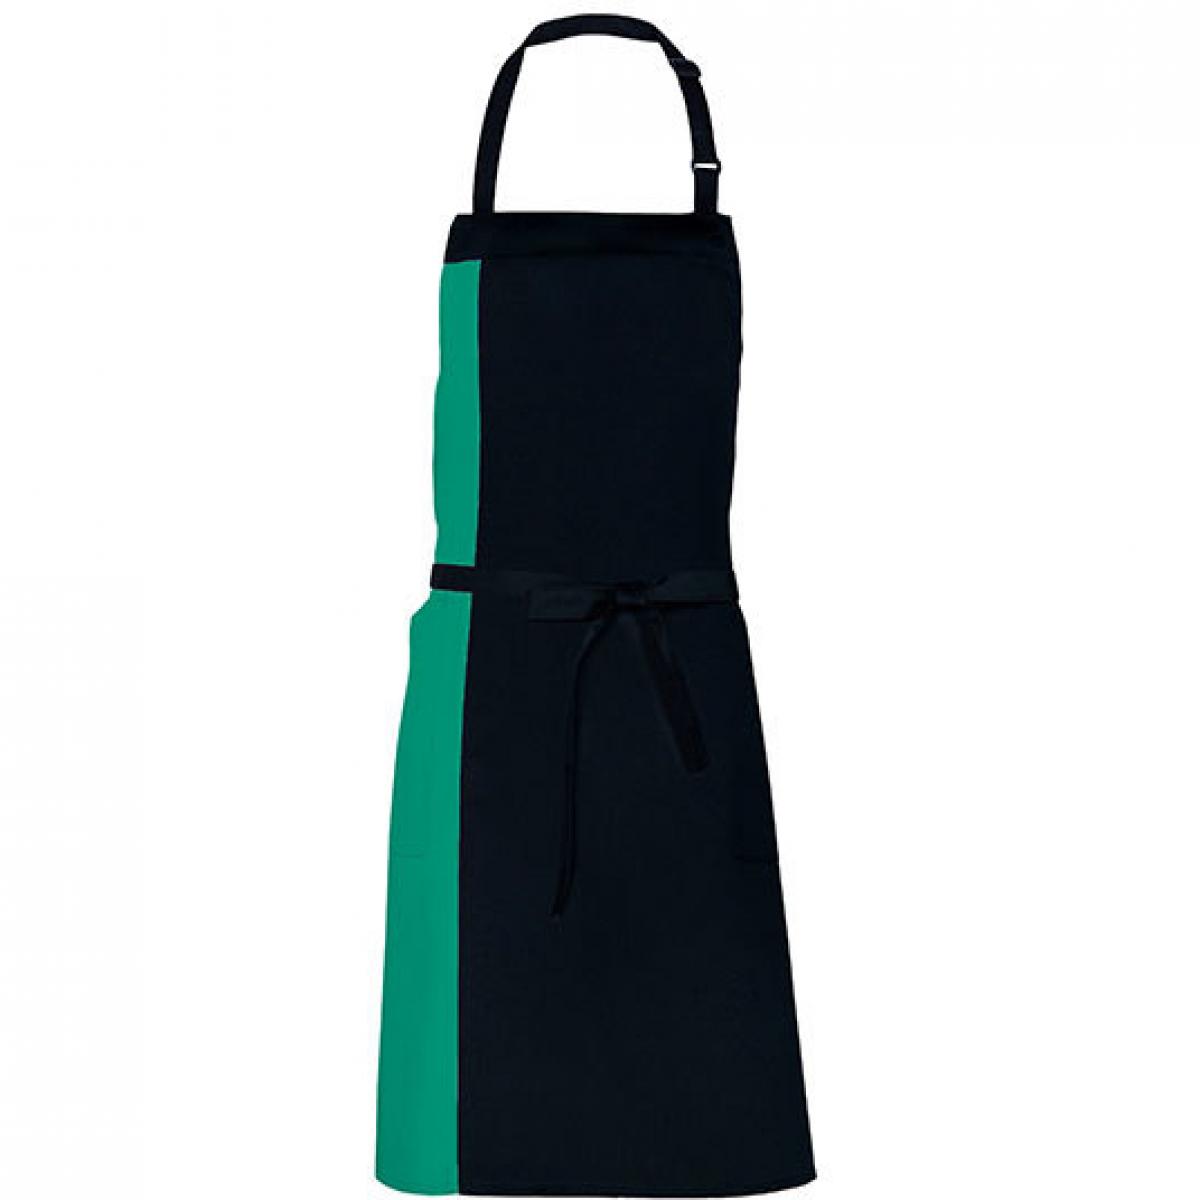 Hersteller: Link Kitchen Wear Herstellernummer: DS8572 Artikelbezeichnung: Duo Apron - 72 x 85 cm - Waschbar bis 60 °C Farbe: Black/Emerald (ca. Pantone 341)